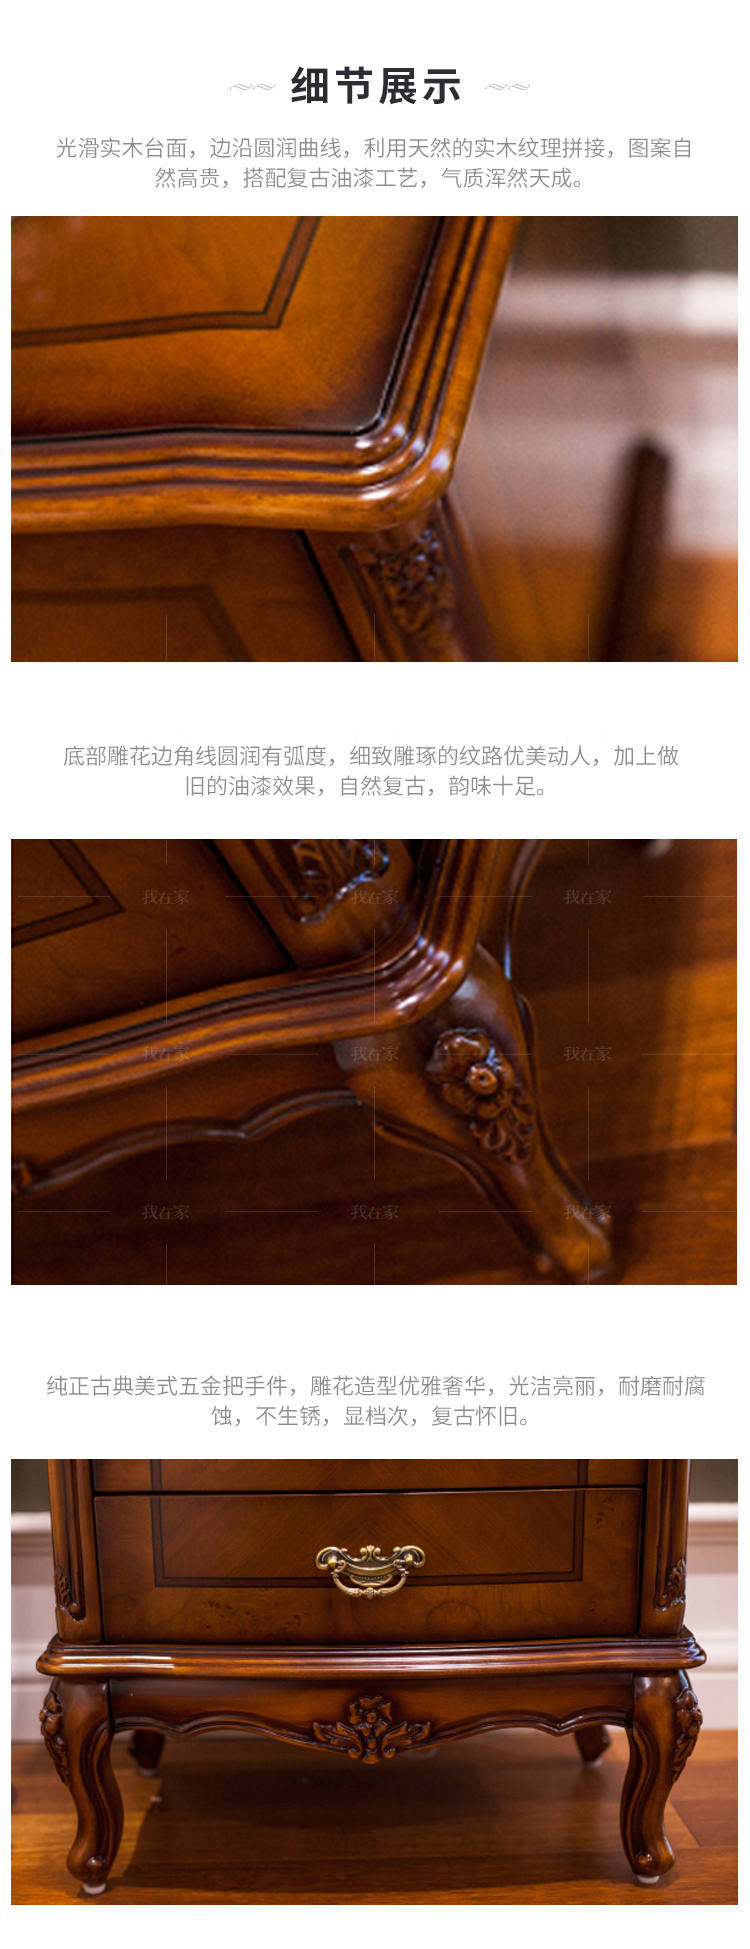 古典欧式风格莱特纳床头柜的家具详细介绍